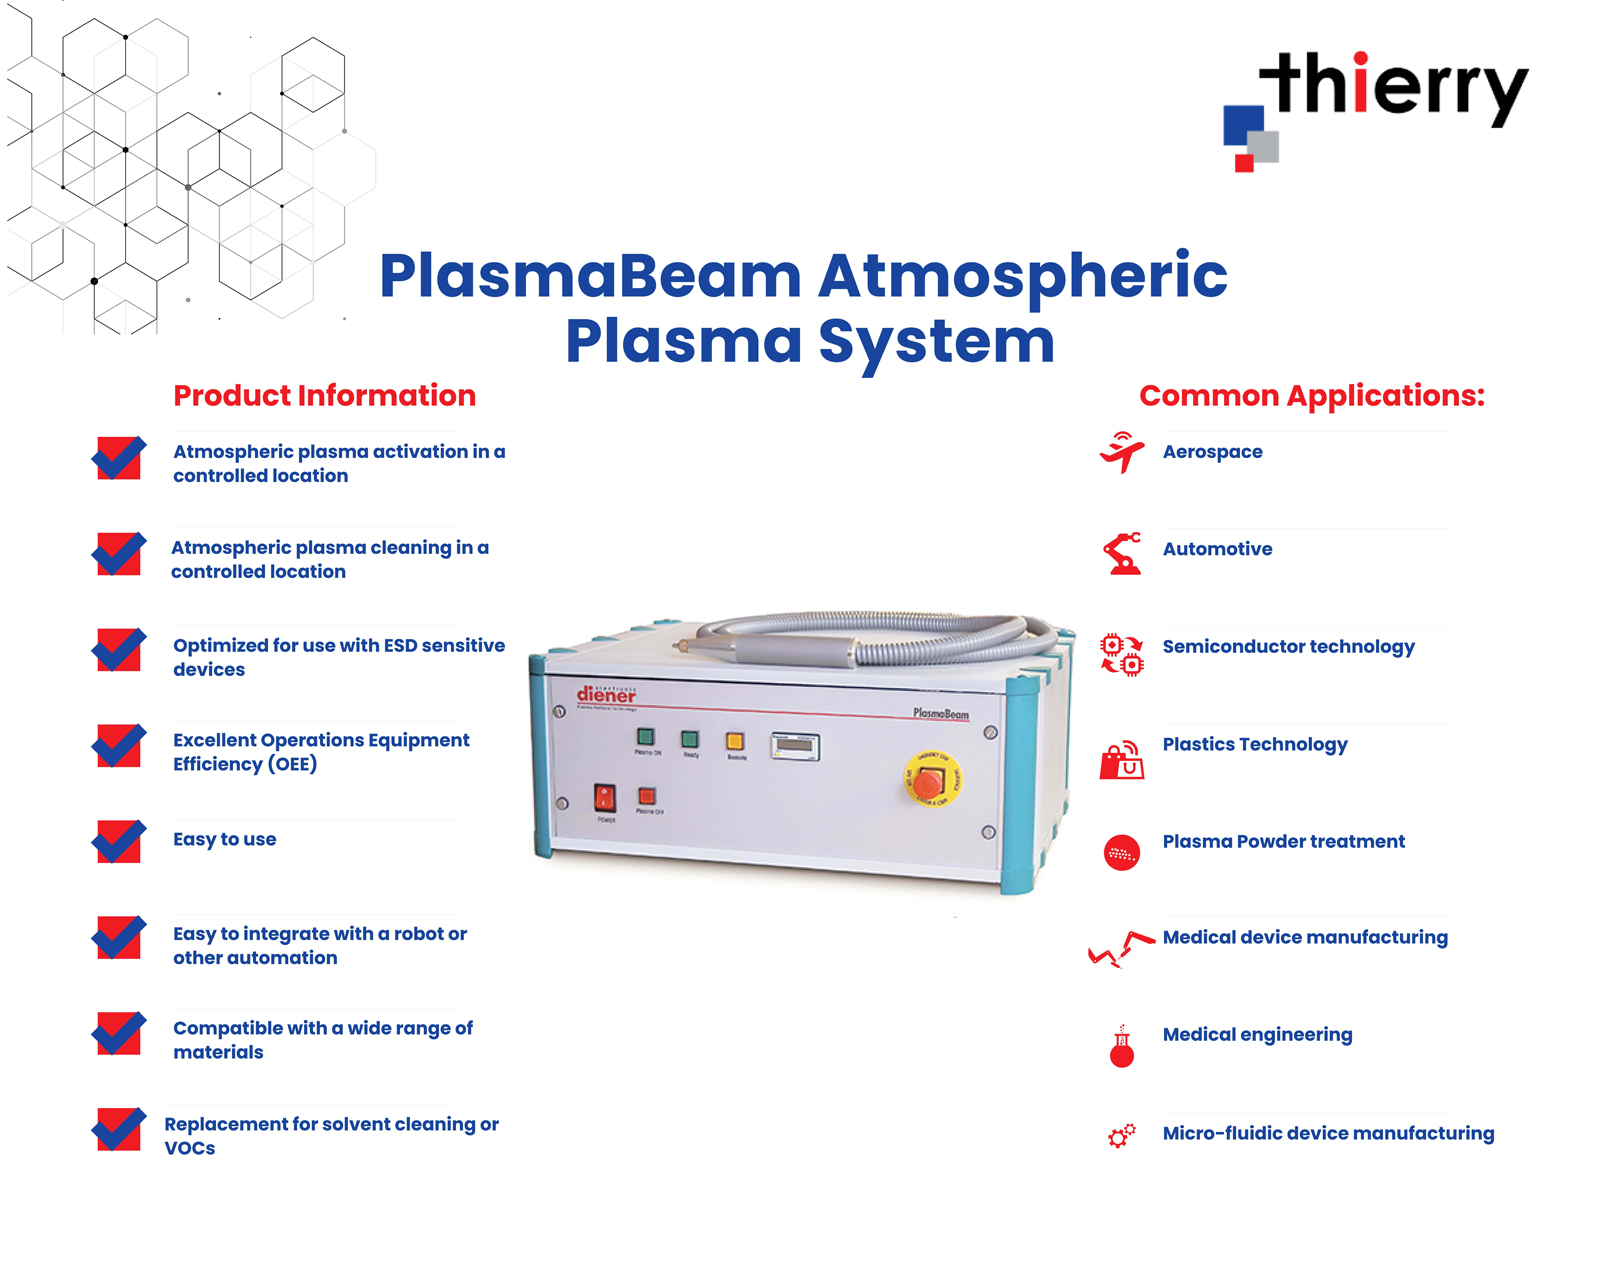 Thierry Corp PlasmaBeam Atmospheric Plasma System